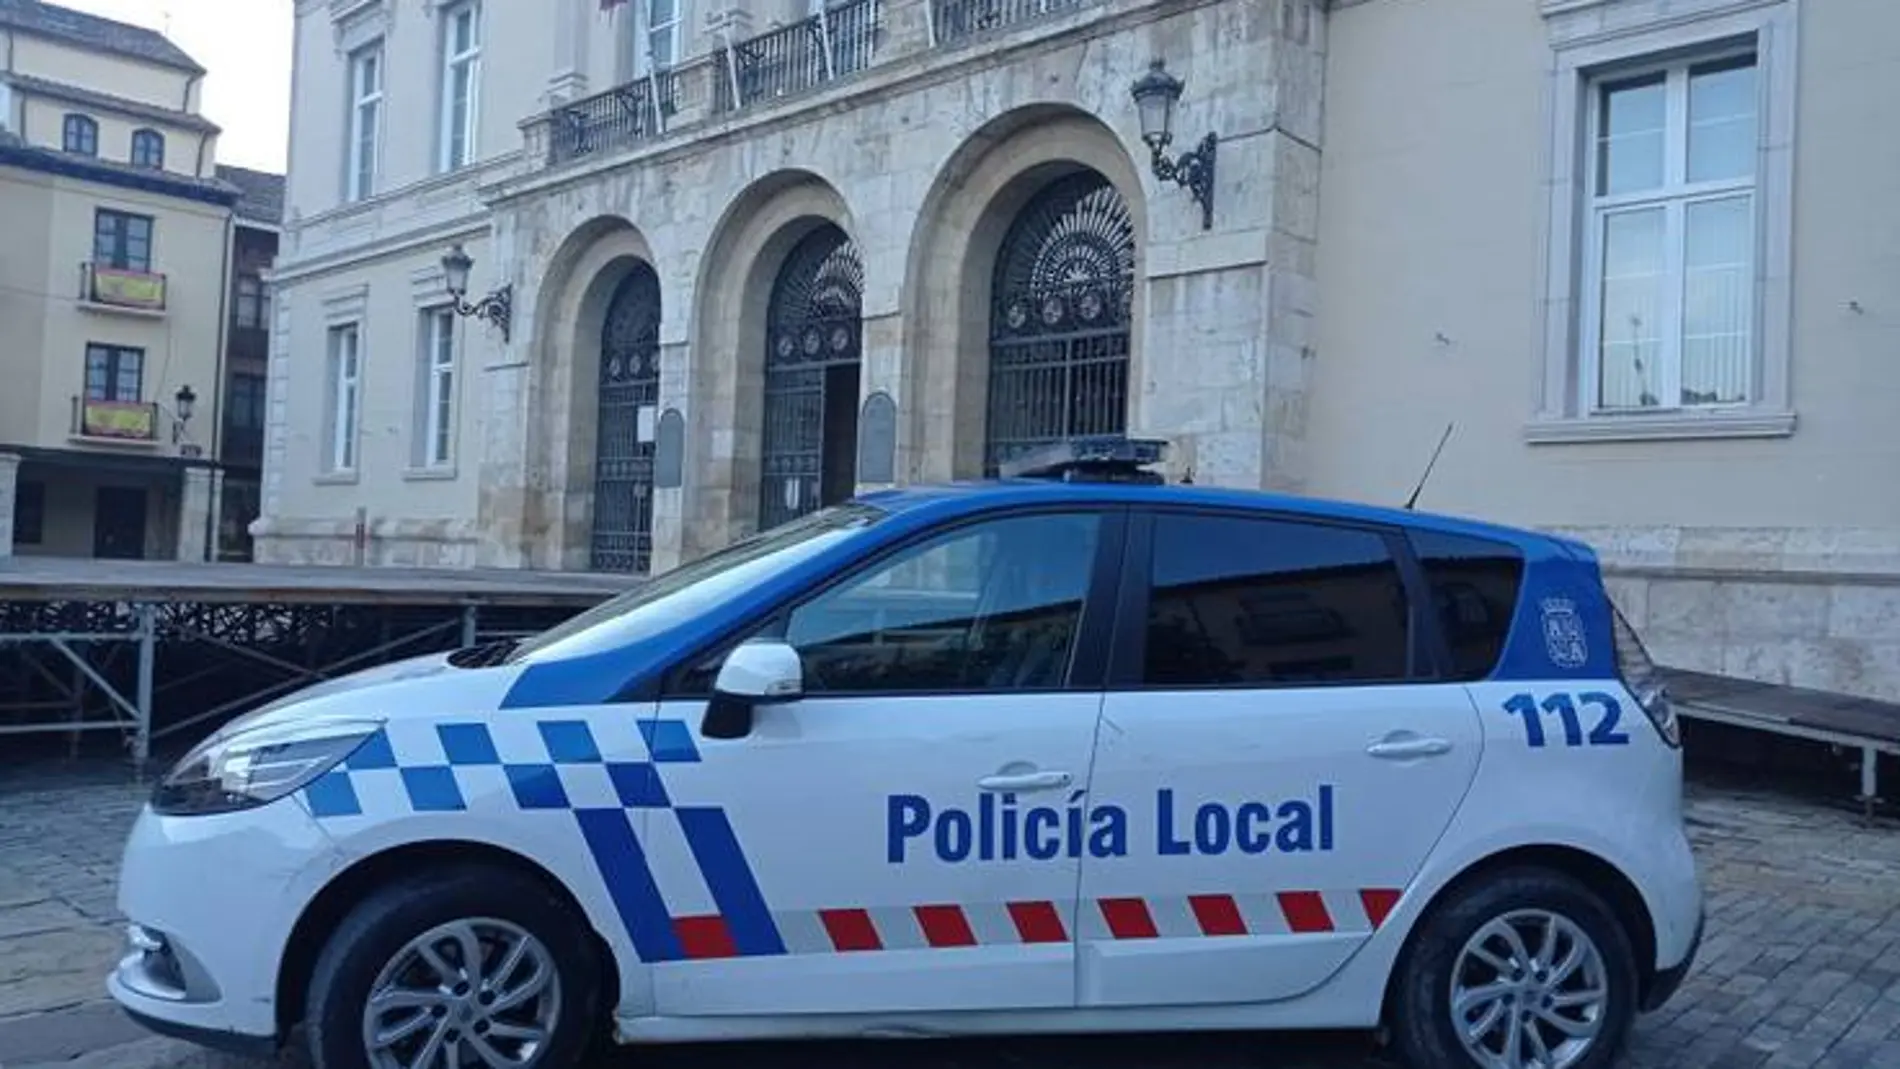 Coche patrulla de la policía local de Palencia